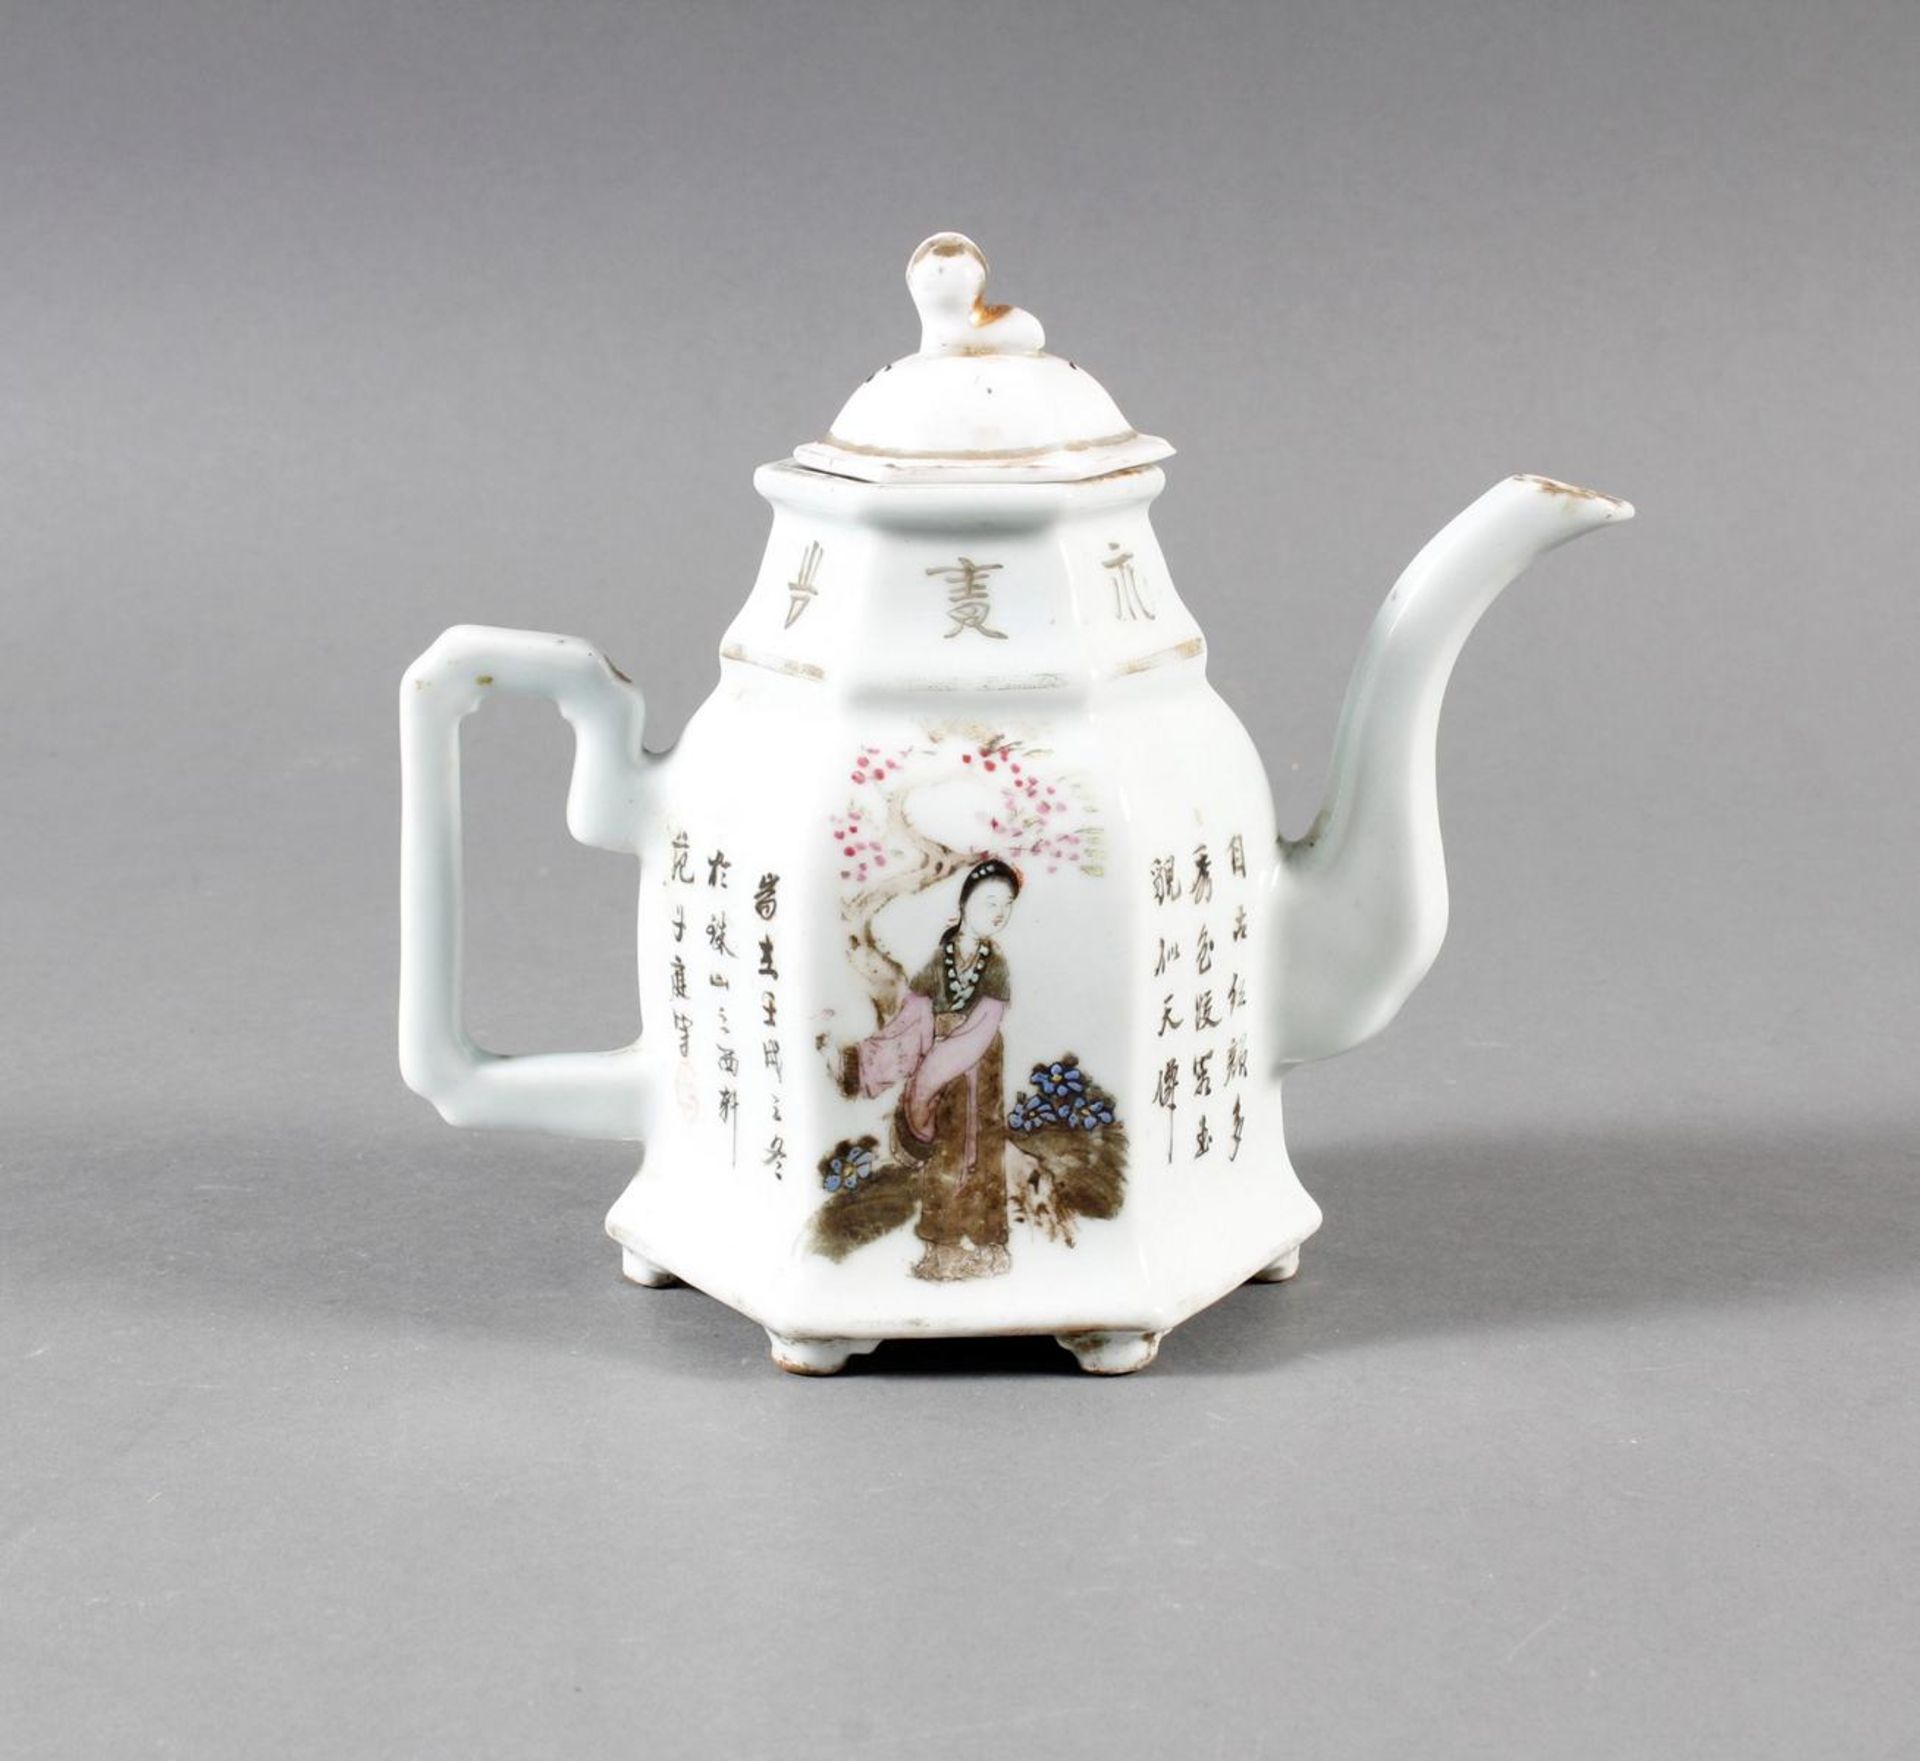 Porzellan Teekann, China, 19. Jahrhundert - Image 7 of 15